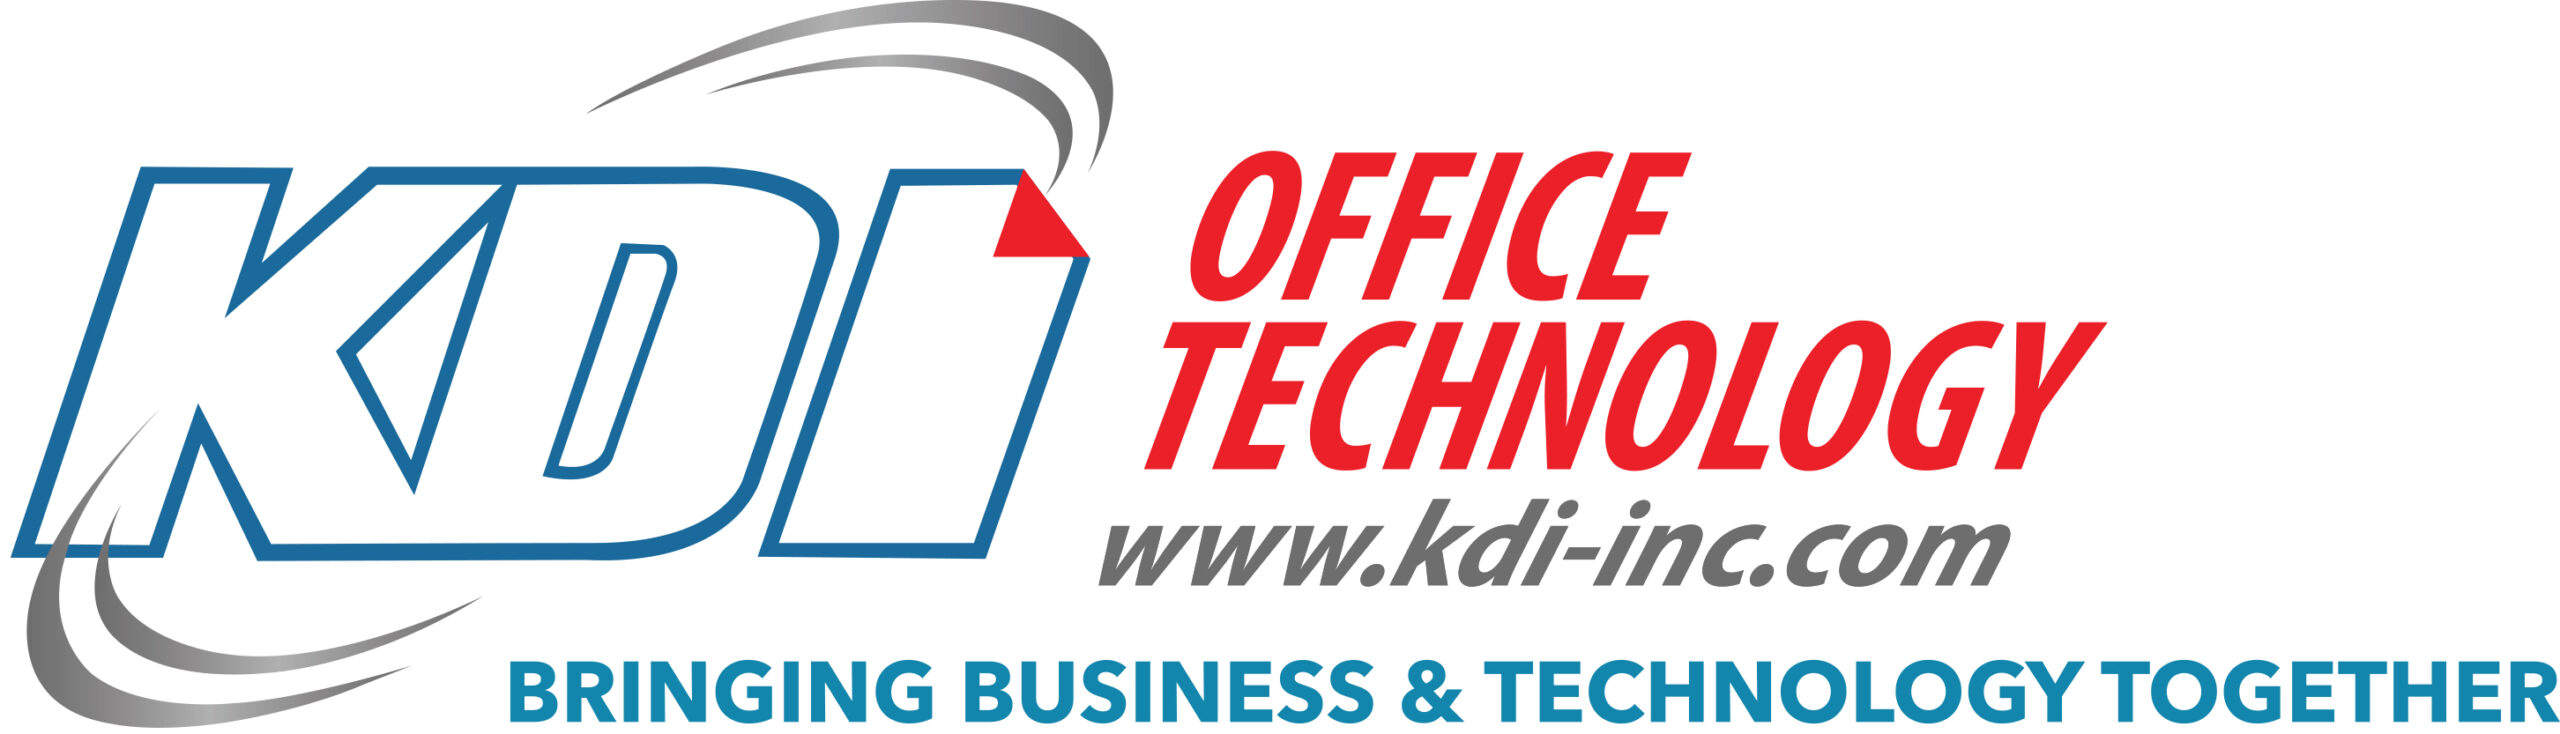 KDI Office Technologyd Name